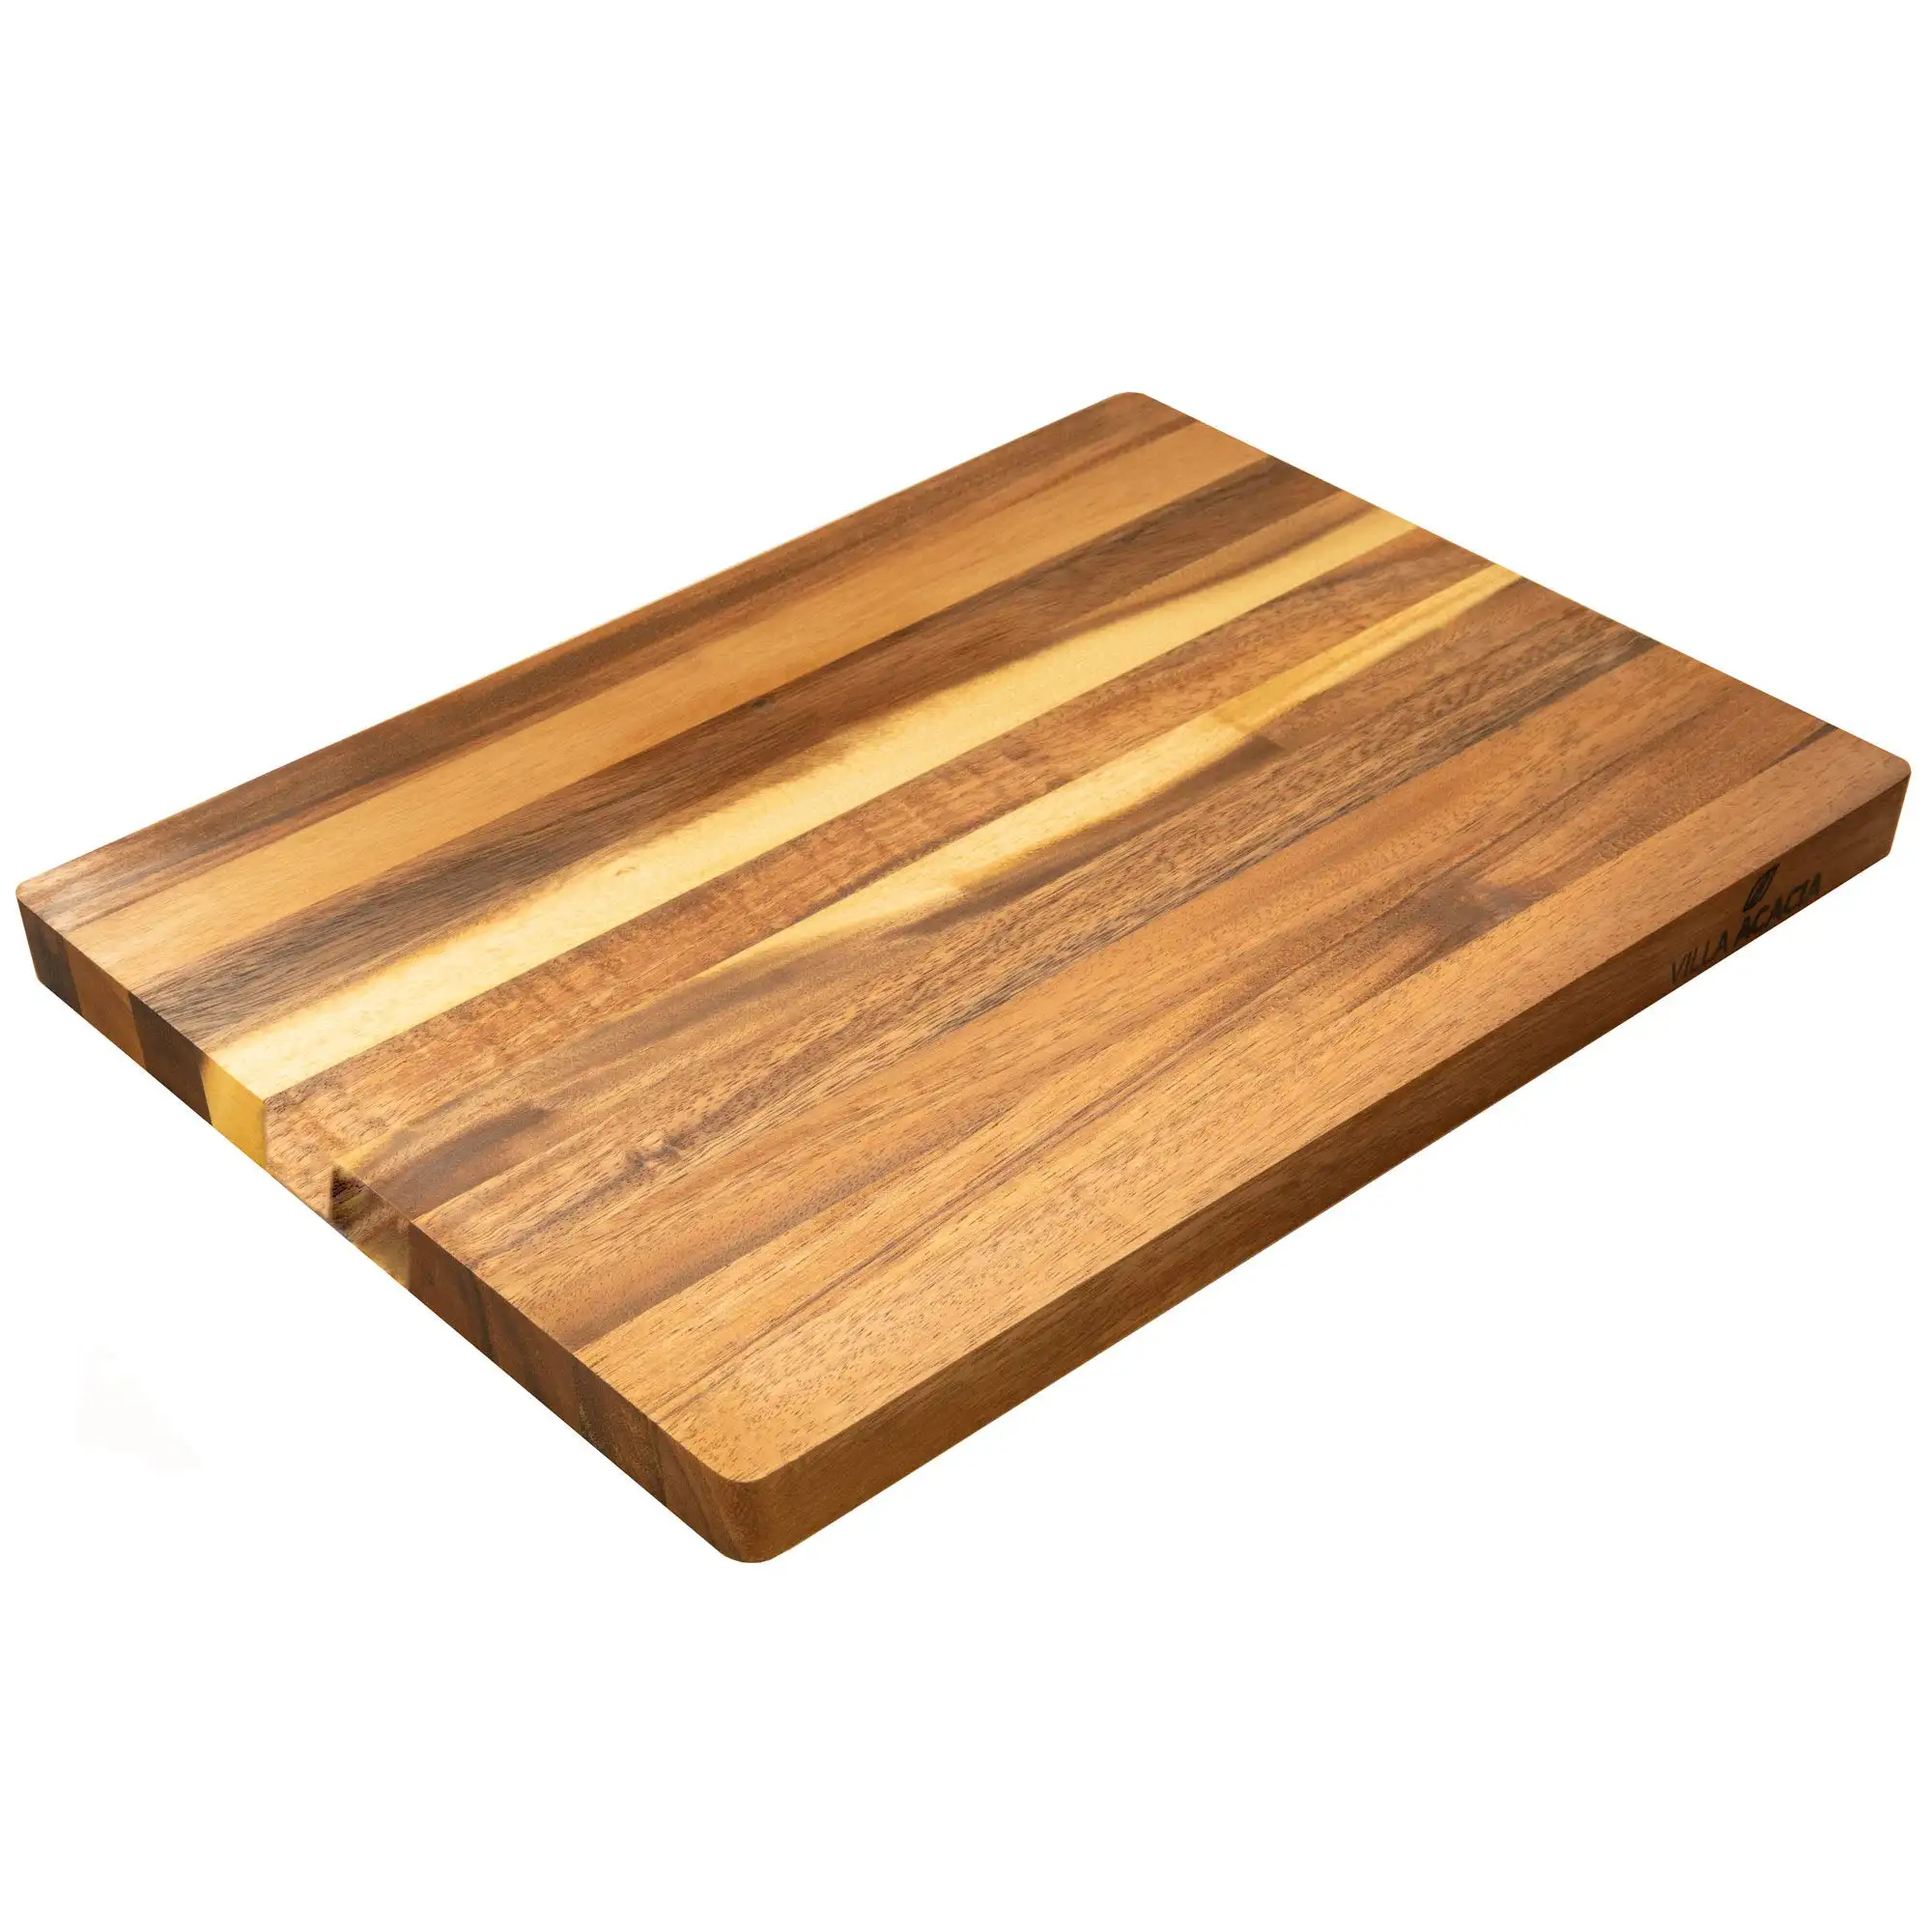 高品質天然木製まな板/丸板キッチン用 + 84 845 639 639